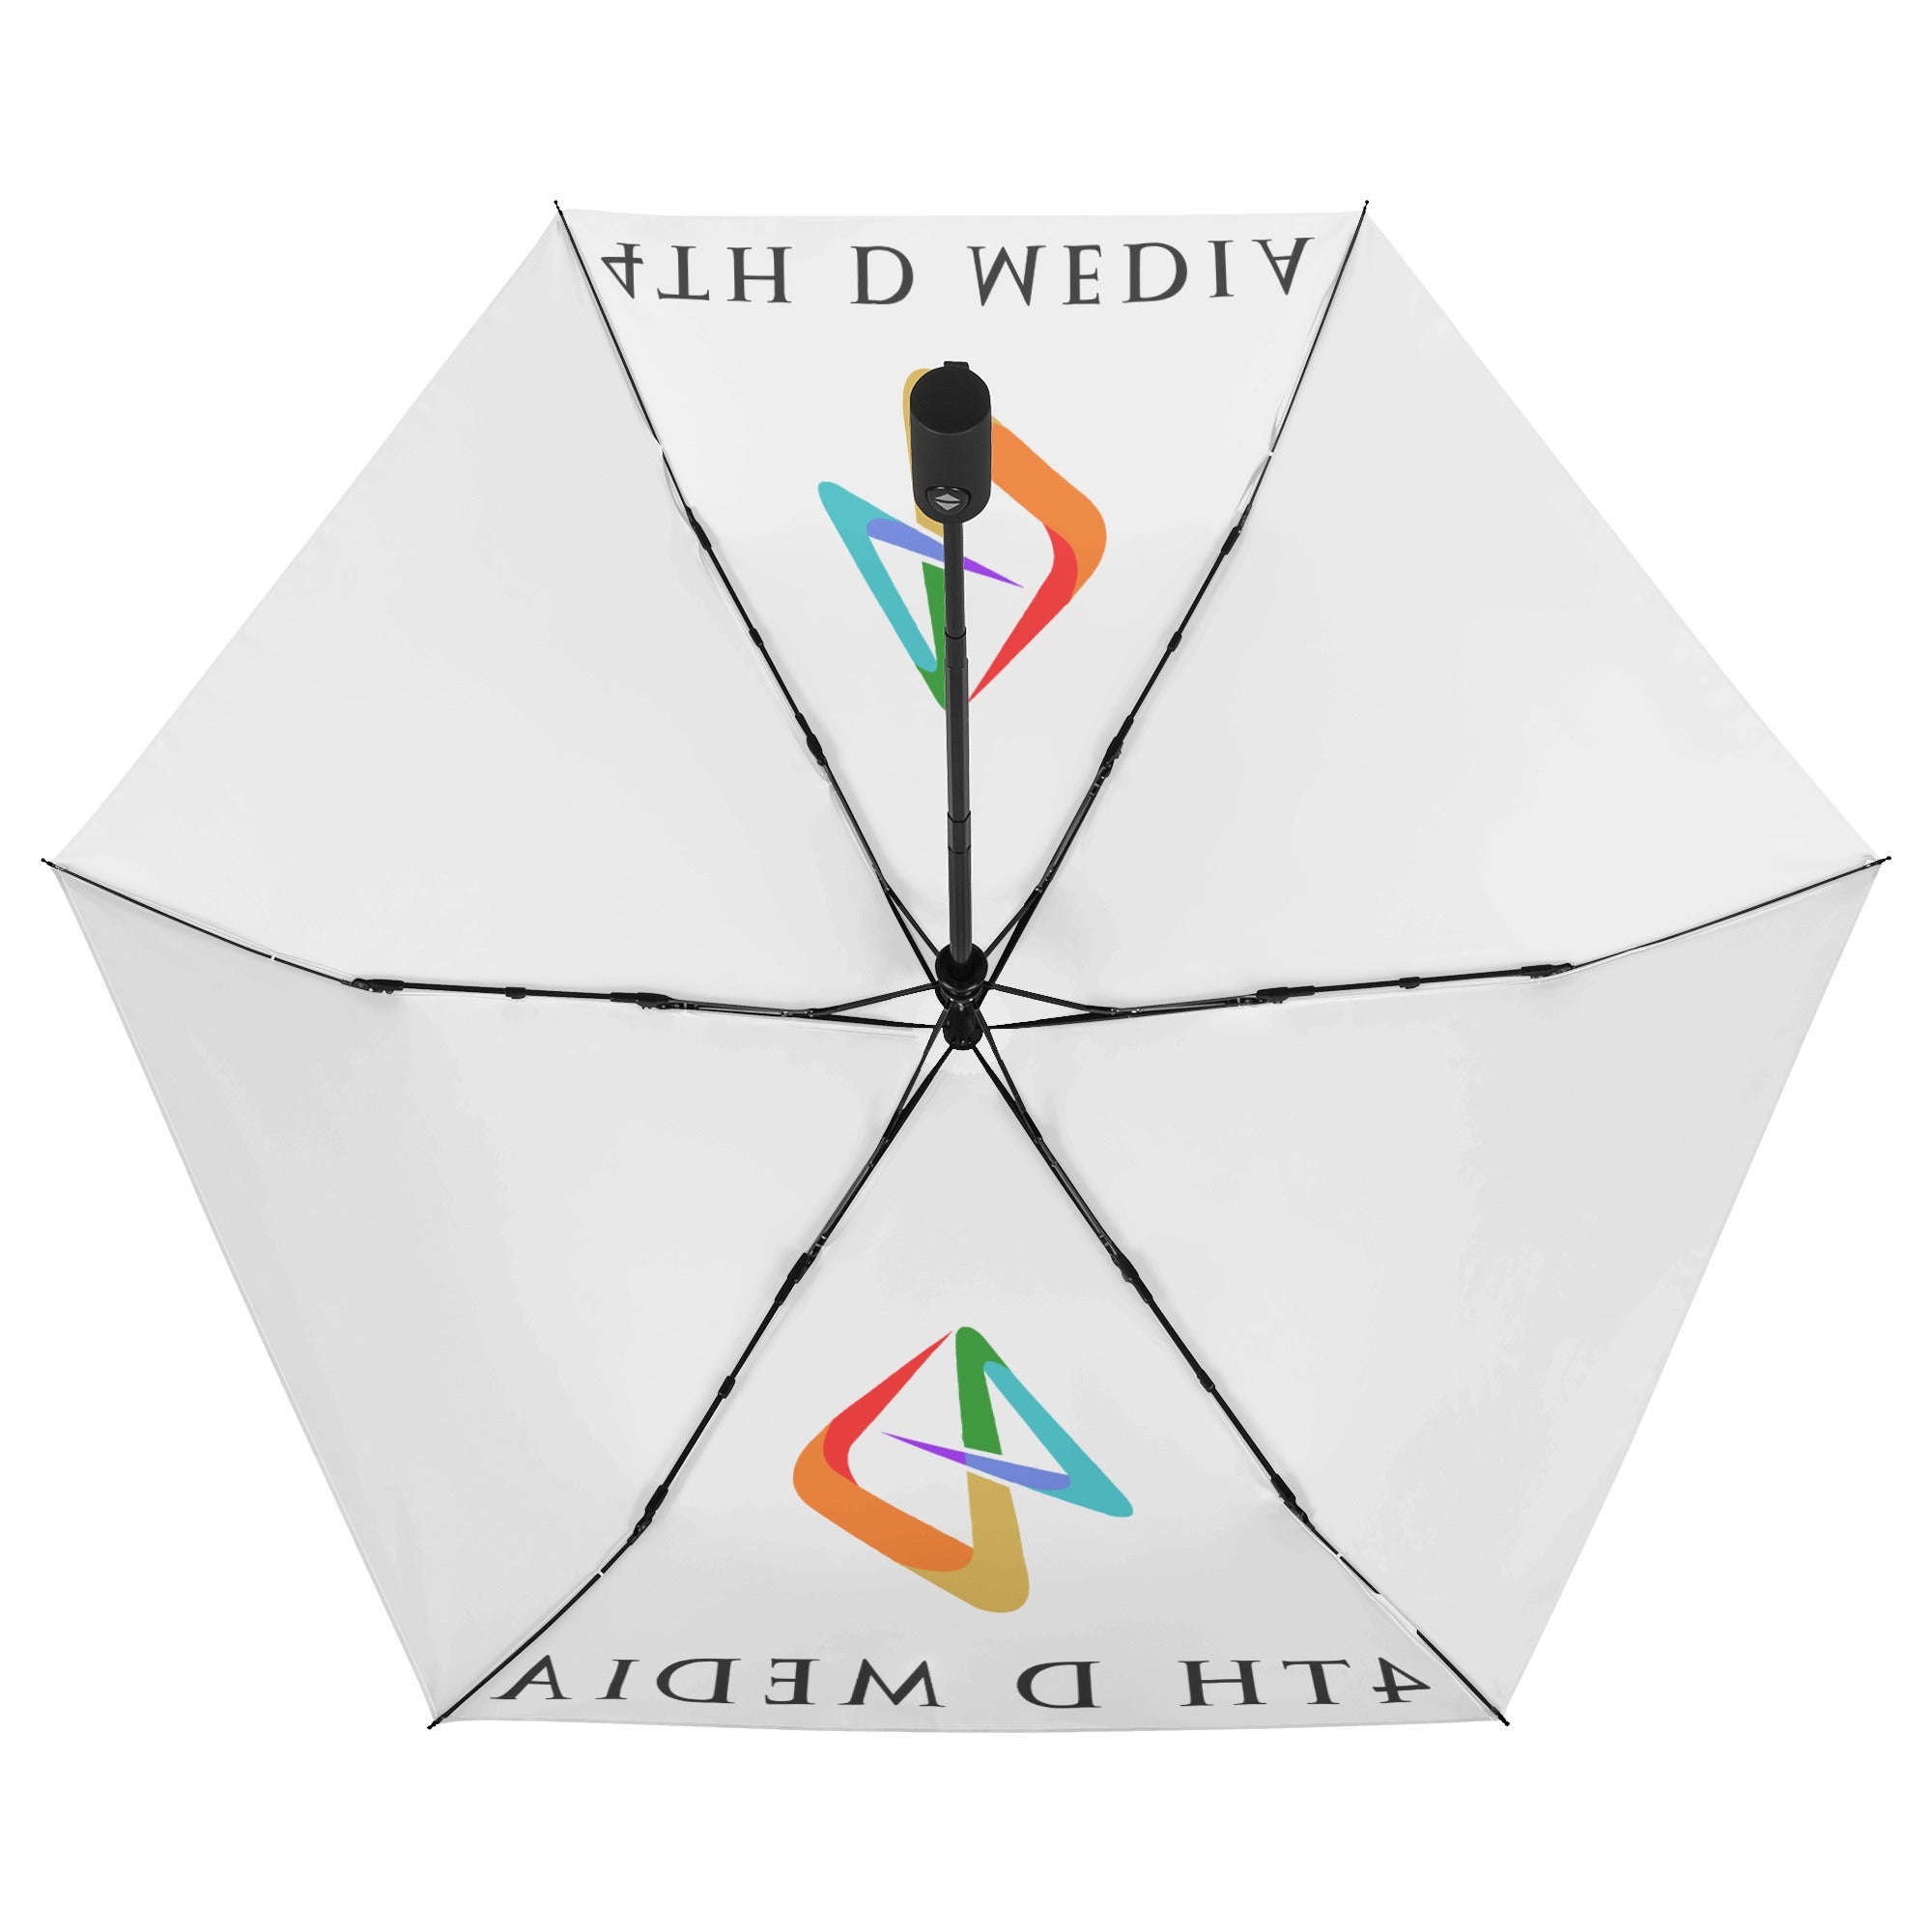 4th Dimension Media Lightweight Auto Open & Close Umbrella